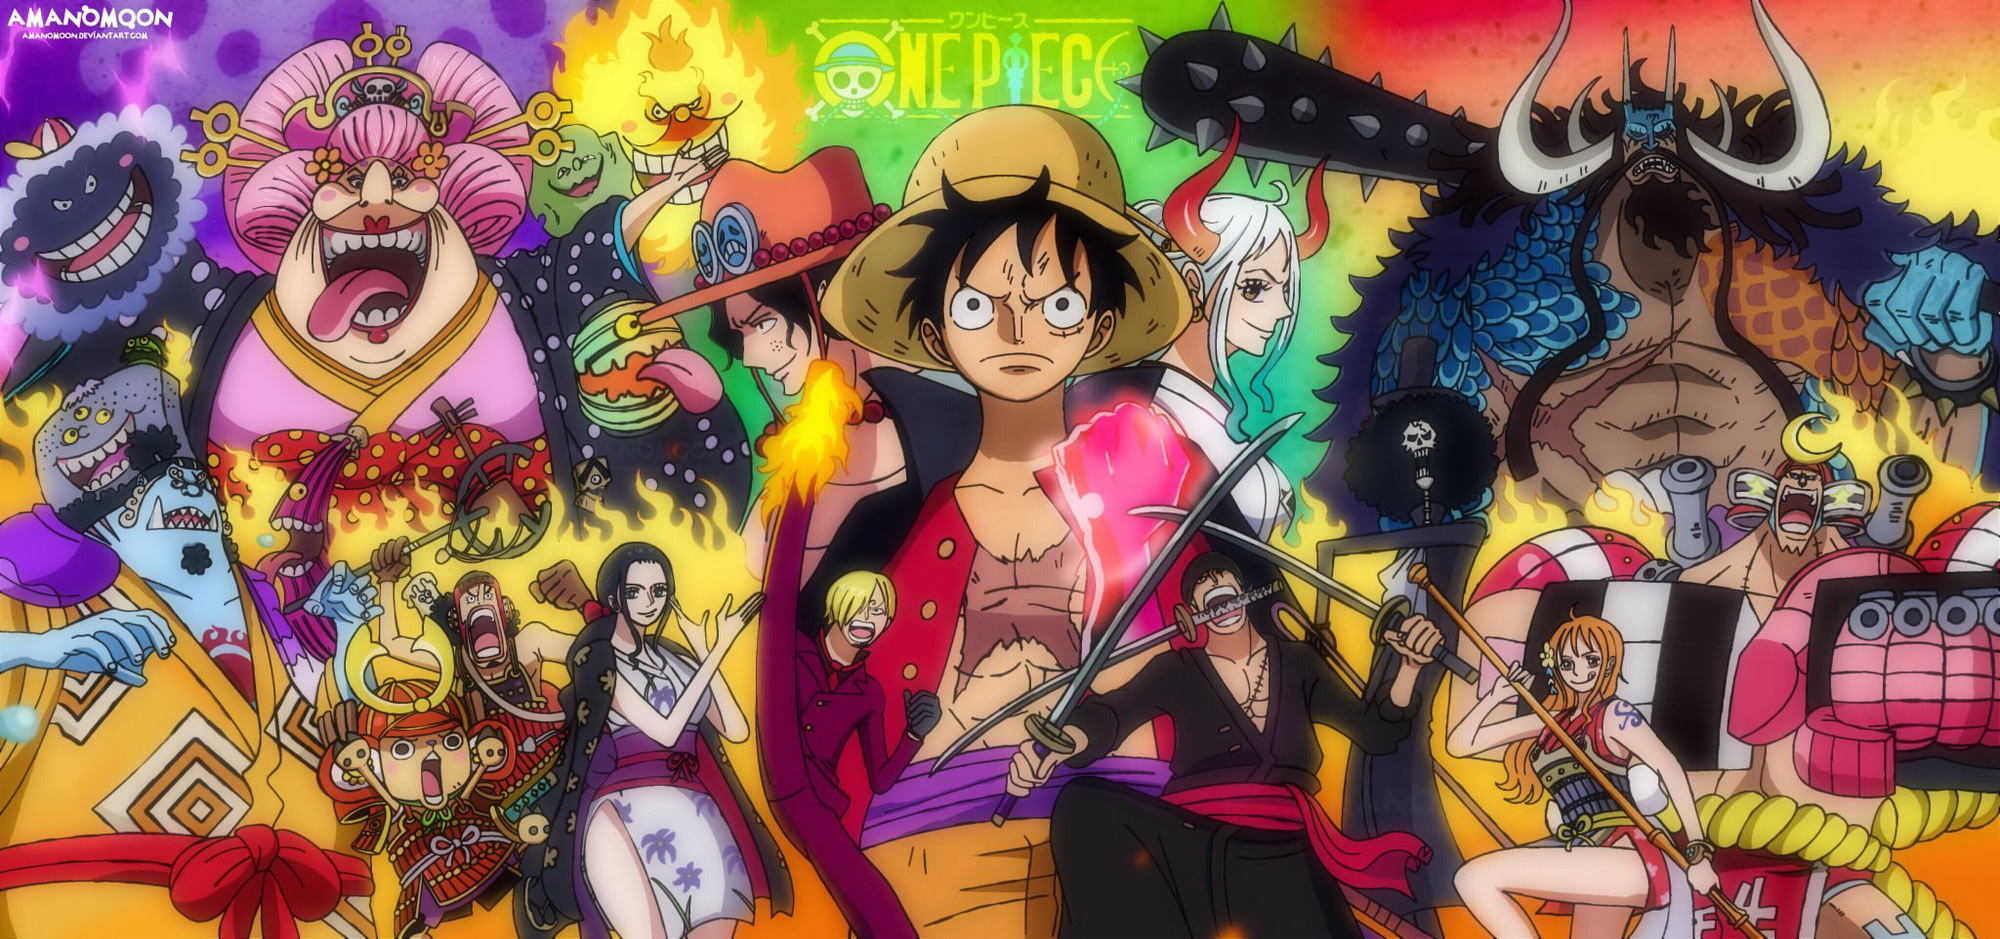 Trong series One Piece đầy màu sắc, liệu bạn có bao giờ kinh ngạc bởi những tuyệt tác tranh ở trong đó? Hãy xem qua hình ảnh liên quan để nhận ra tài năng và sự sáng tạo của các tác giả. Đừng bỏ lỡ trải nghiệm tuyệt vời này.